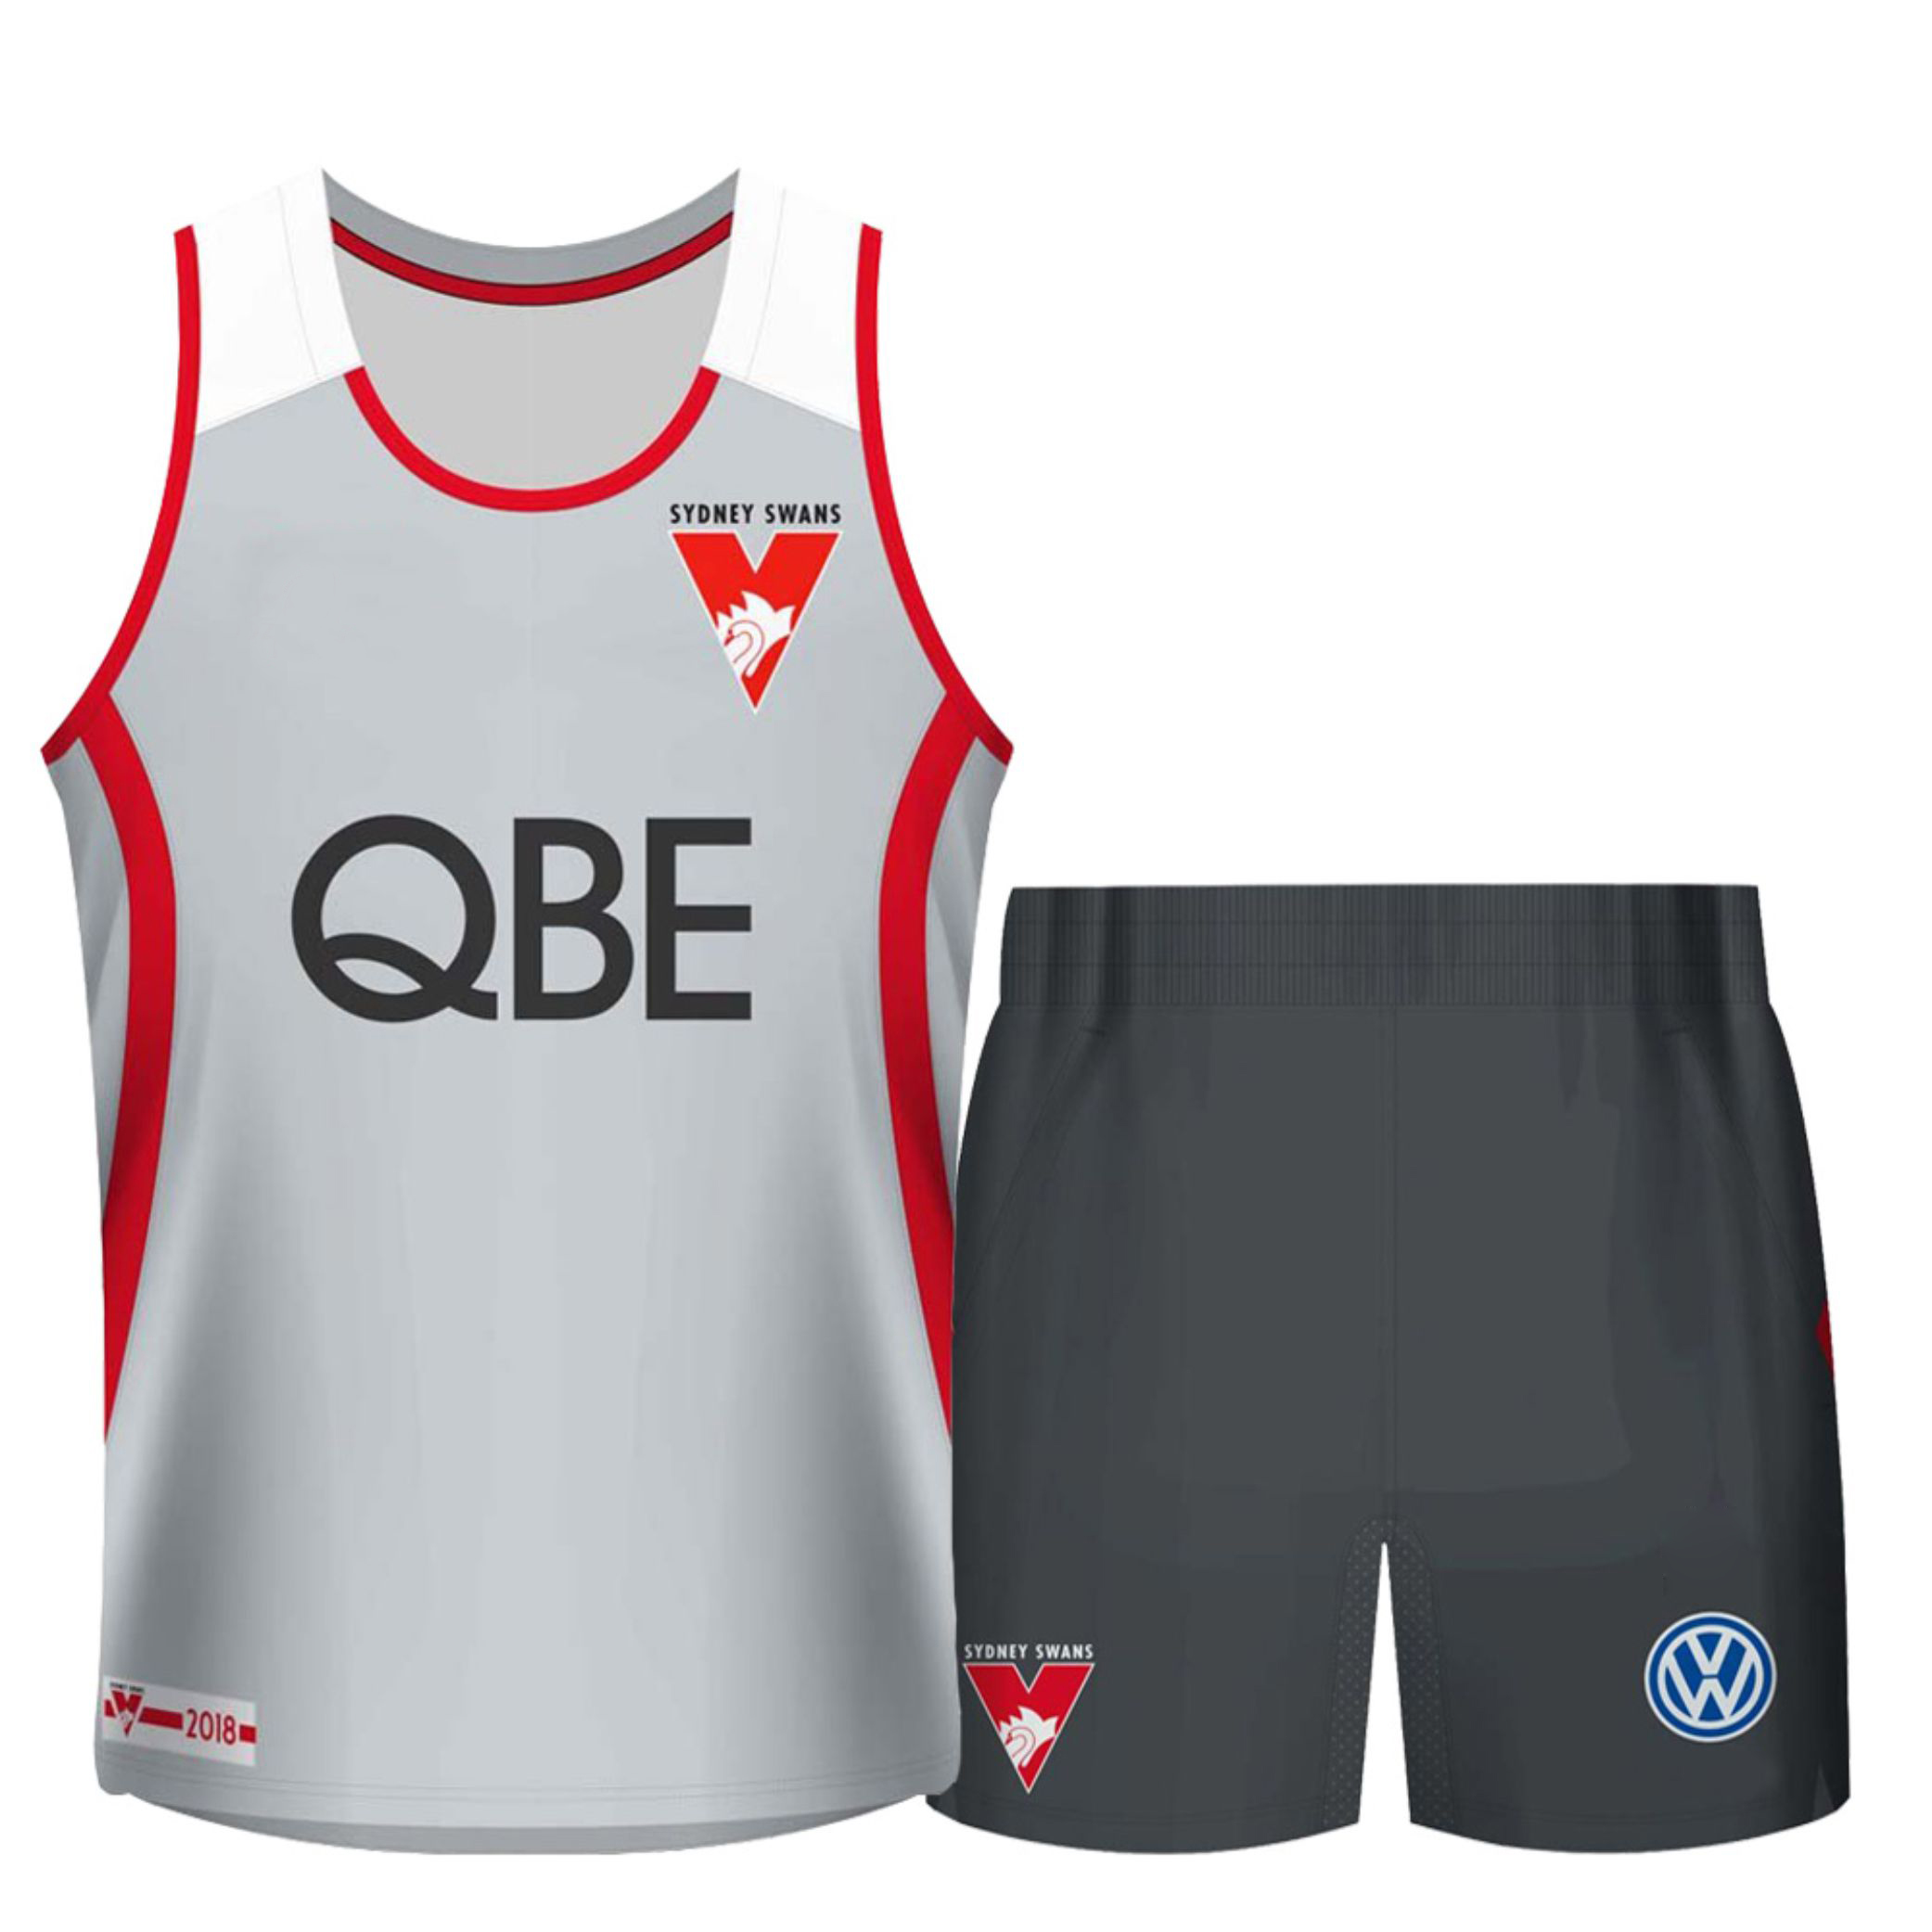 AFL Uniforms